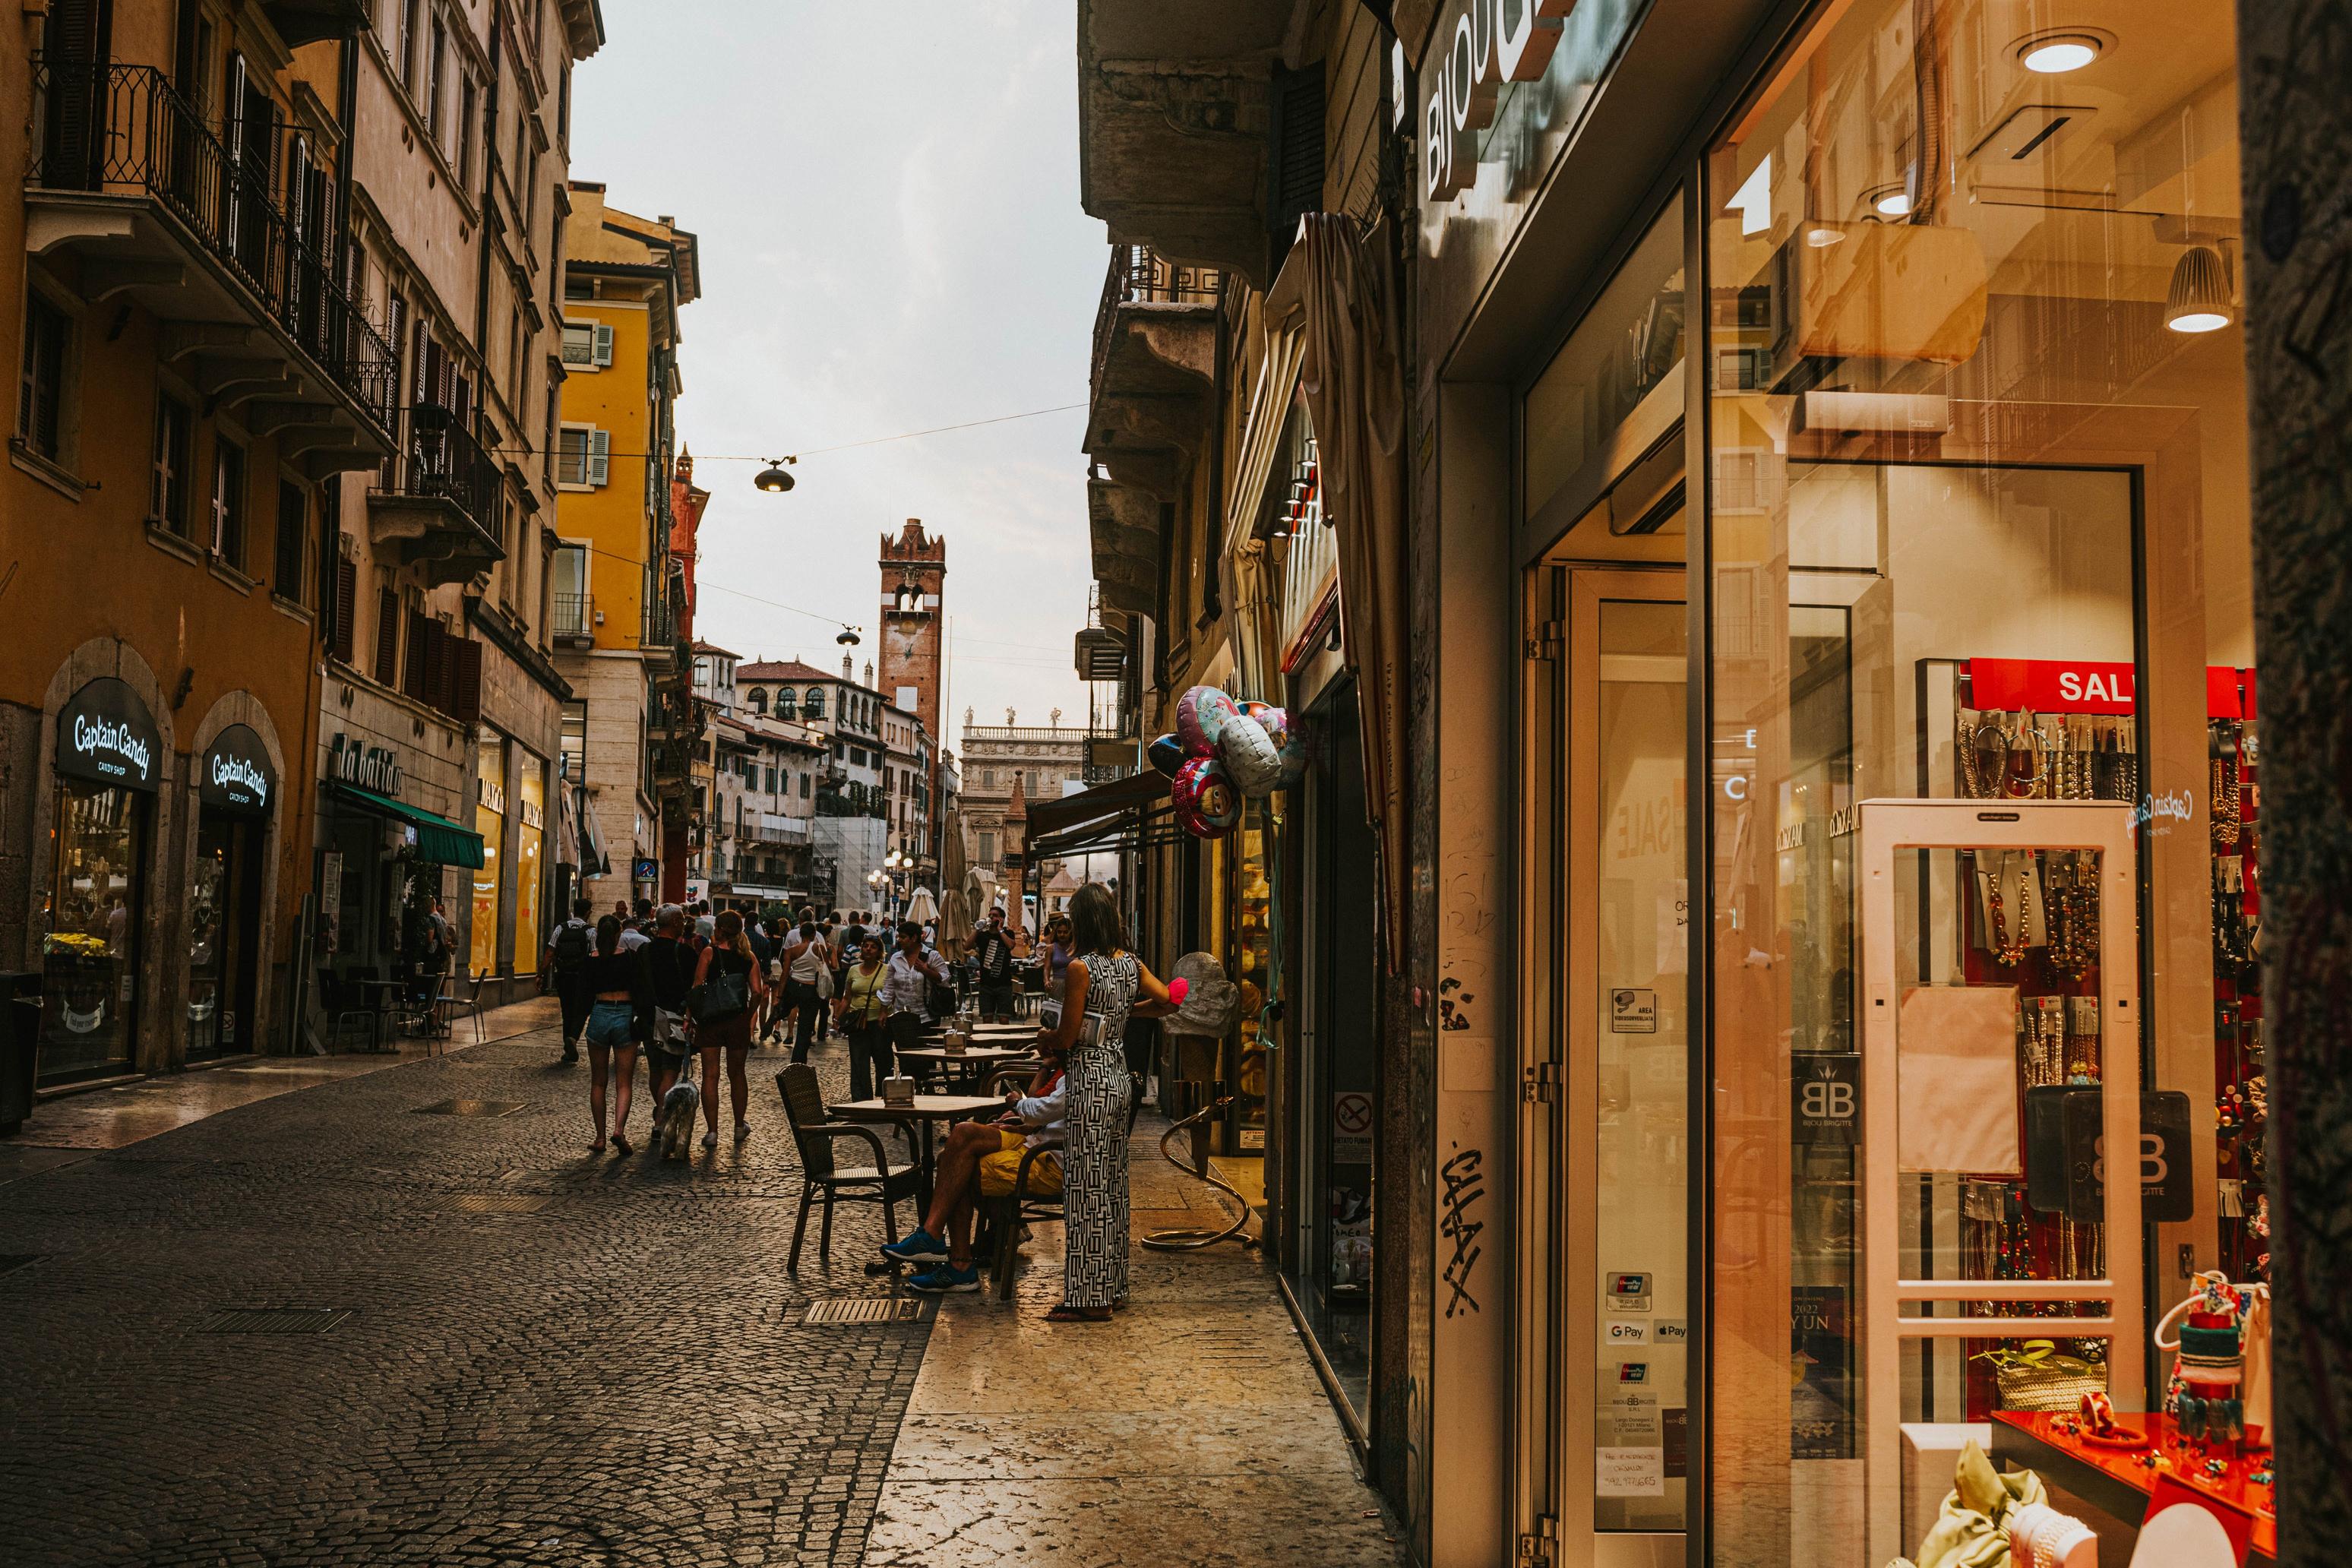 Urokliwe uliczki i butiki – odkryj zakupy w opolskiej starówce